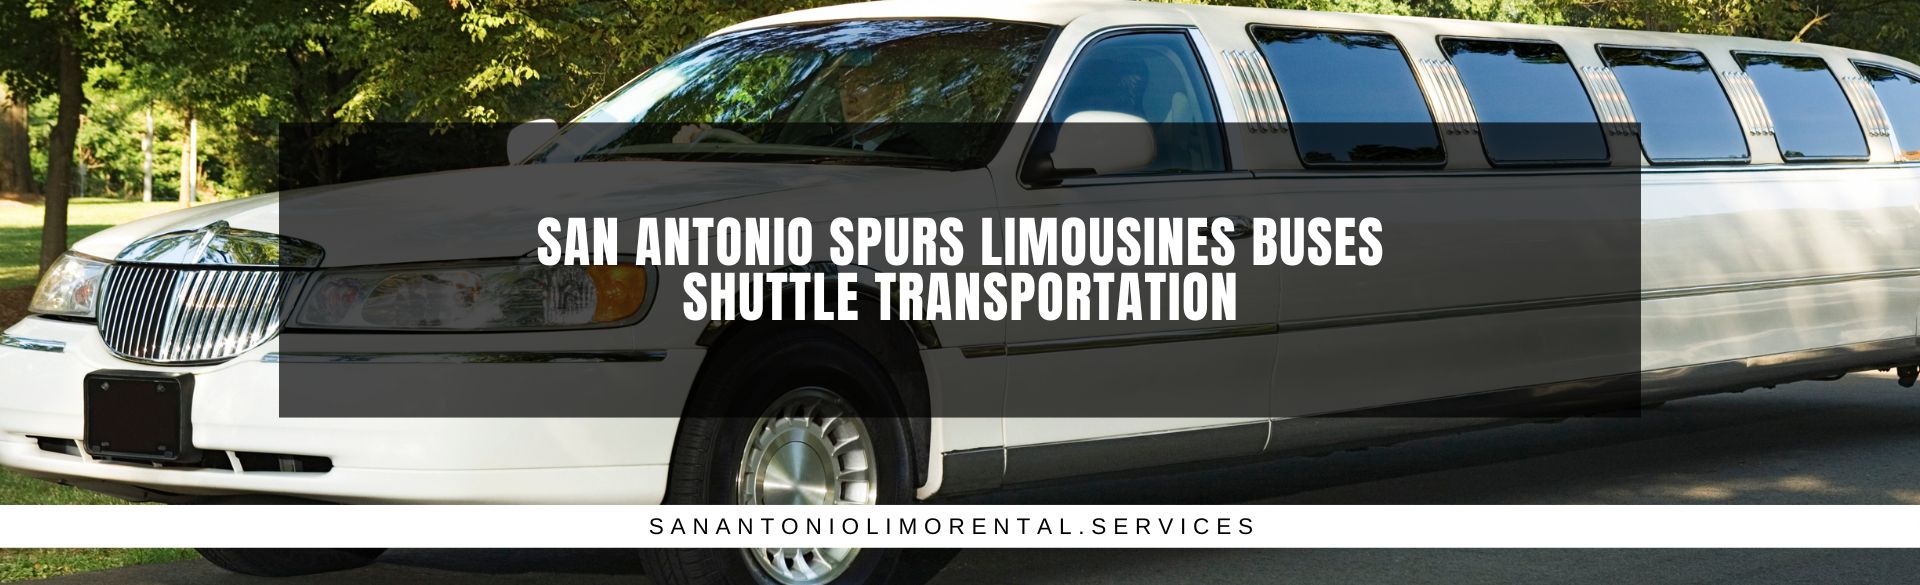 San Antonio Spurs Limousines Buses Shuttle Transportation